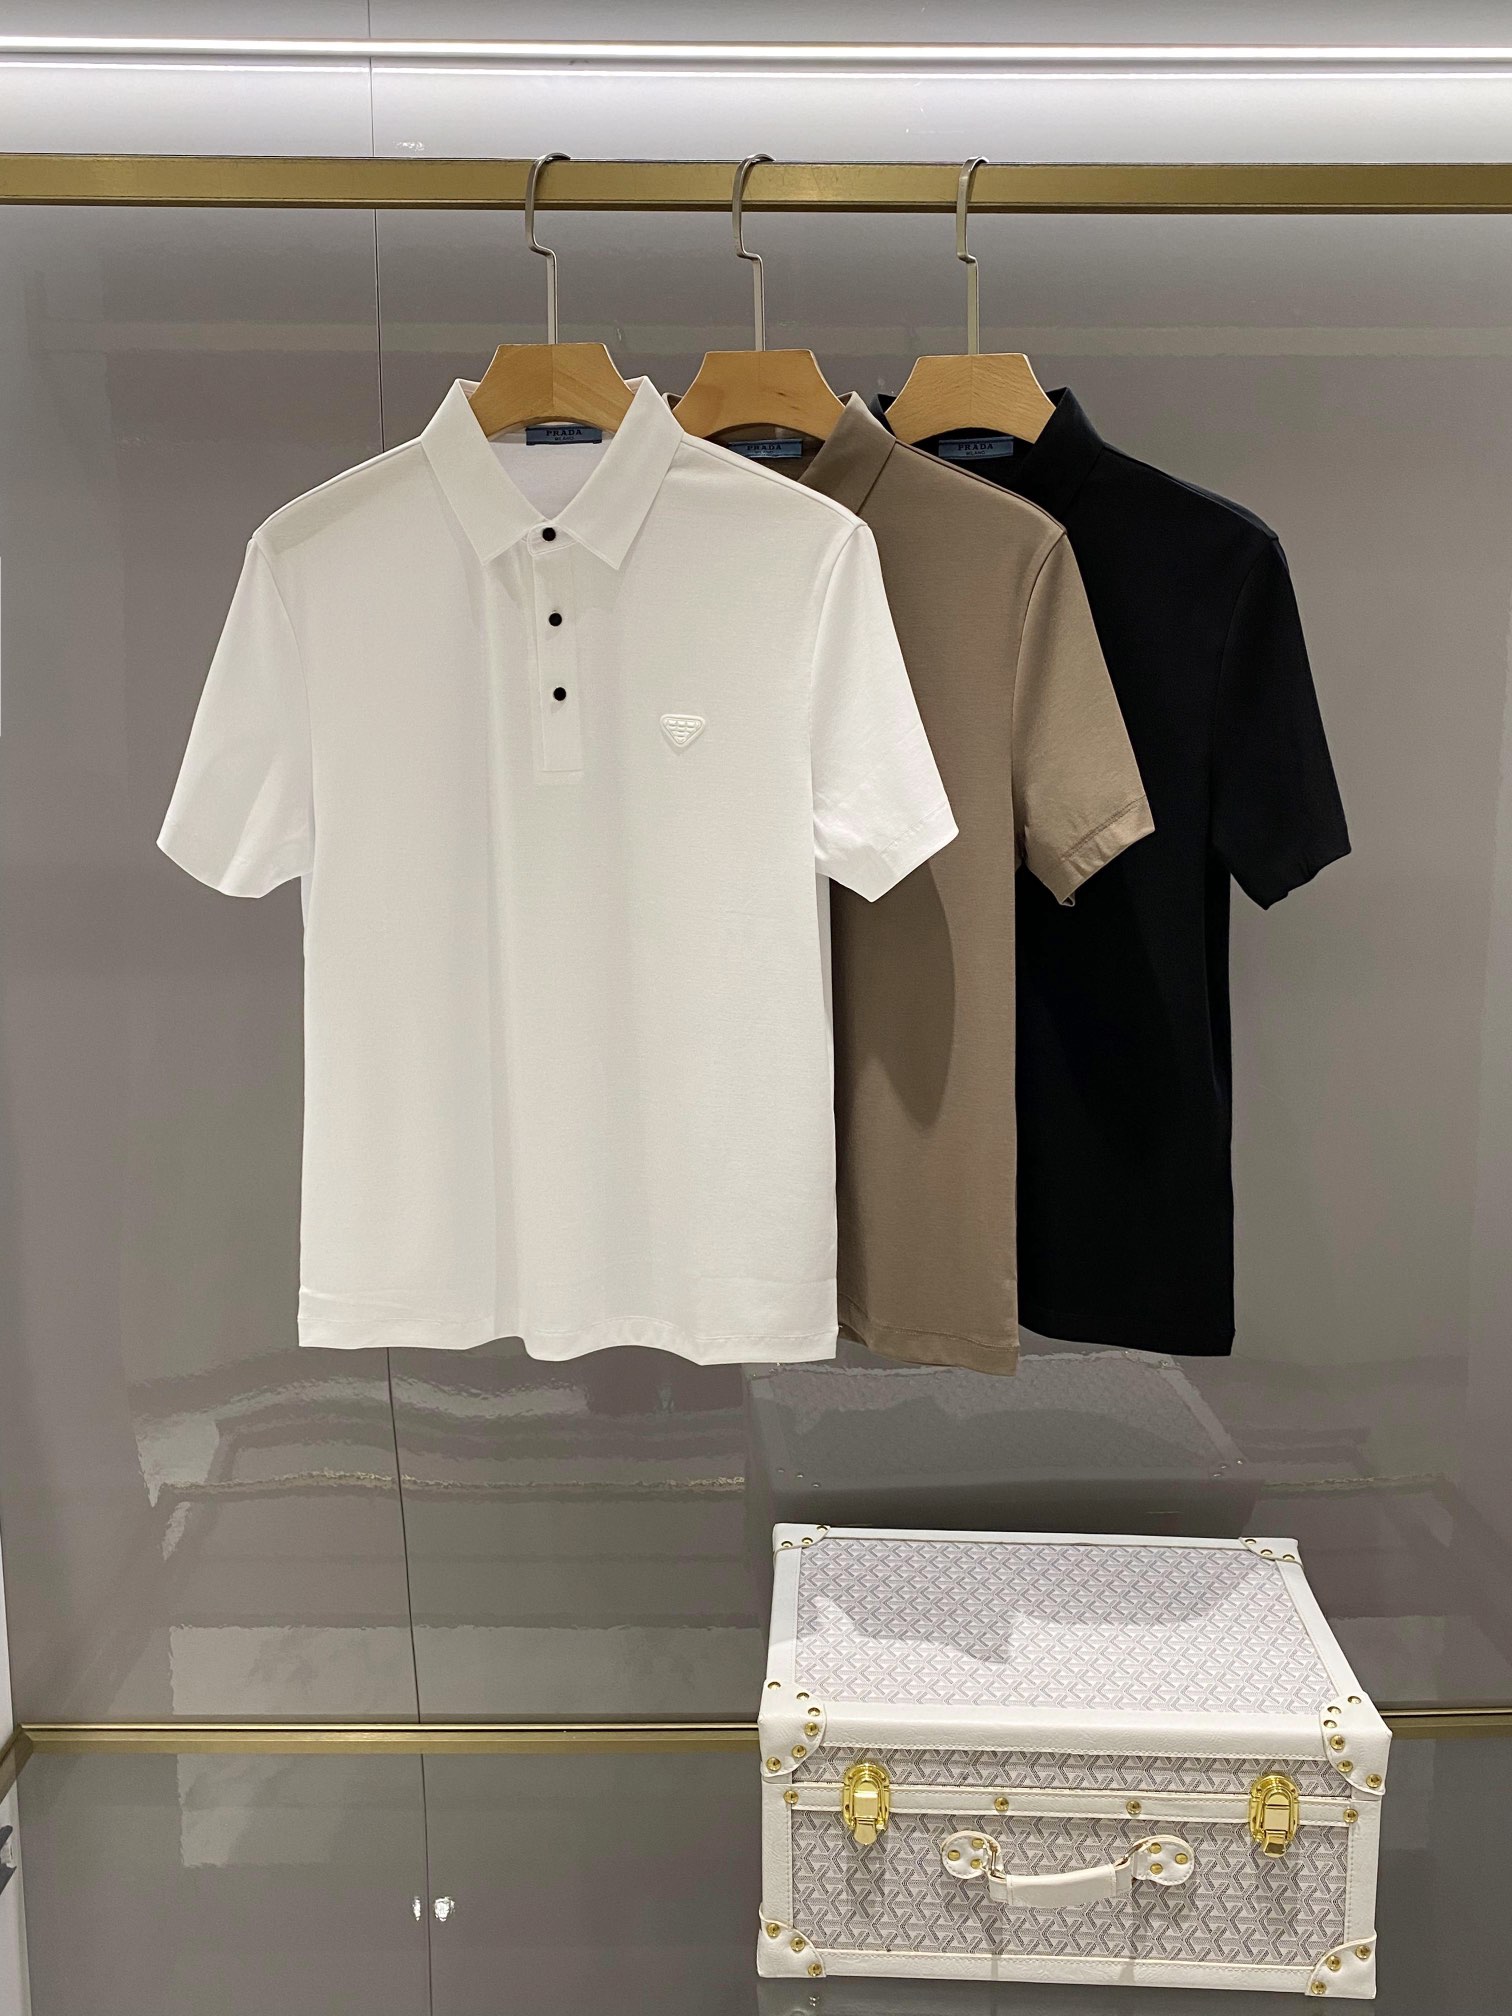 Prada Vêtements Polo T-Shirt Vert armée Noir Blanc Hommes Coton Tricot Fibre de polyester Spandex Série d’été Fashion Manches courtes